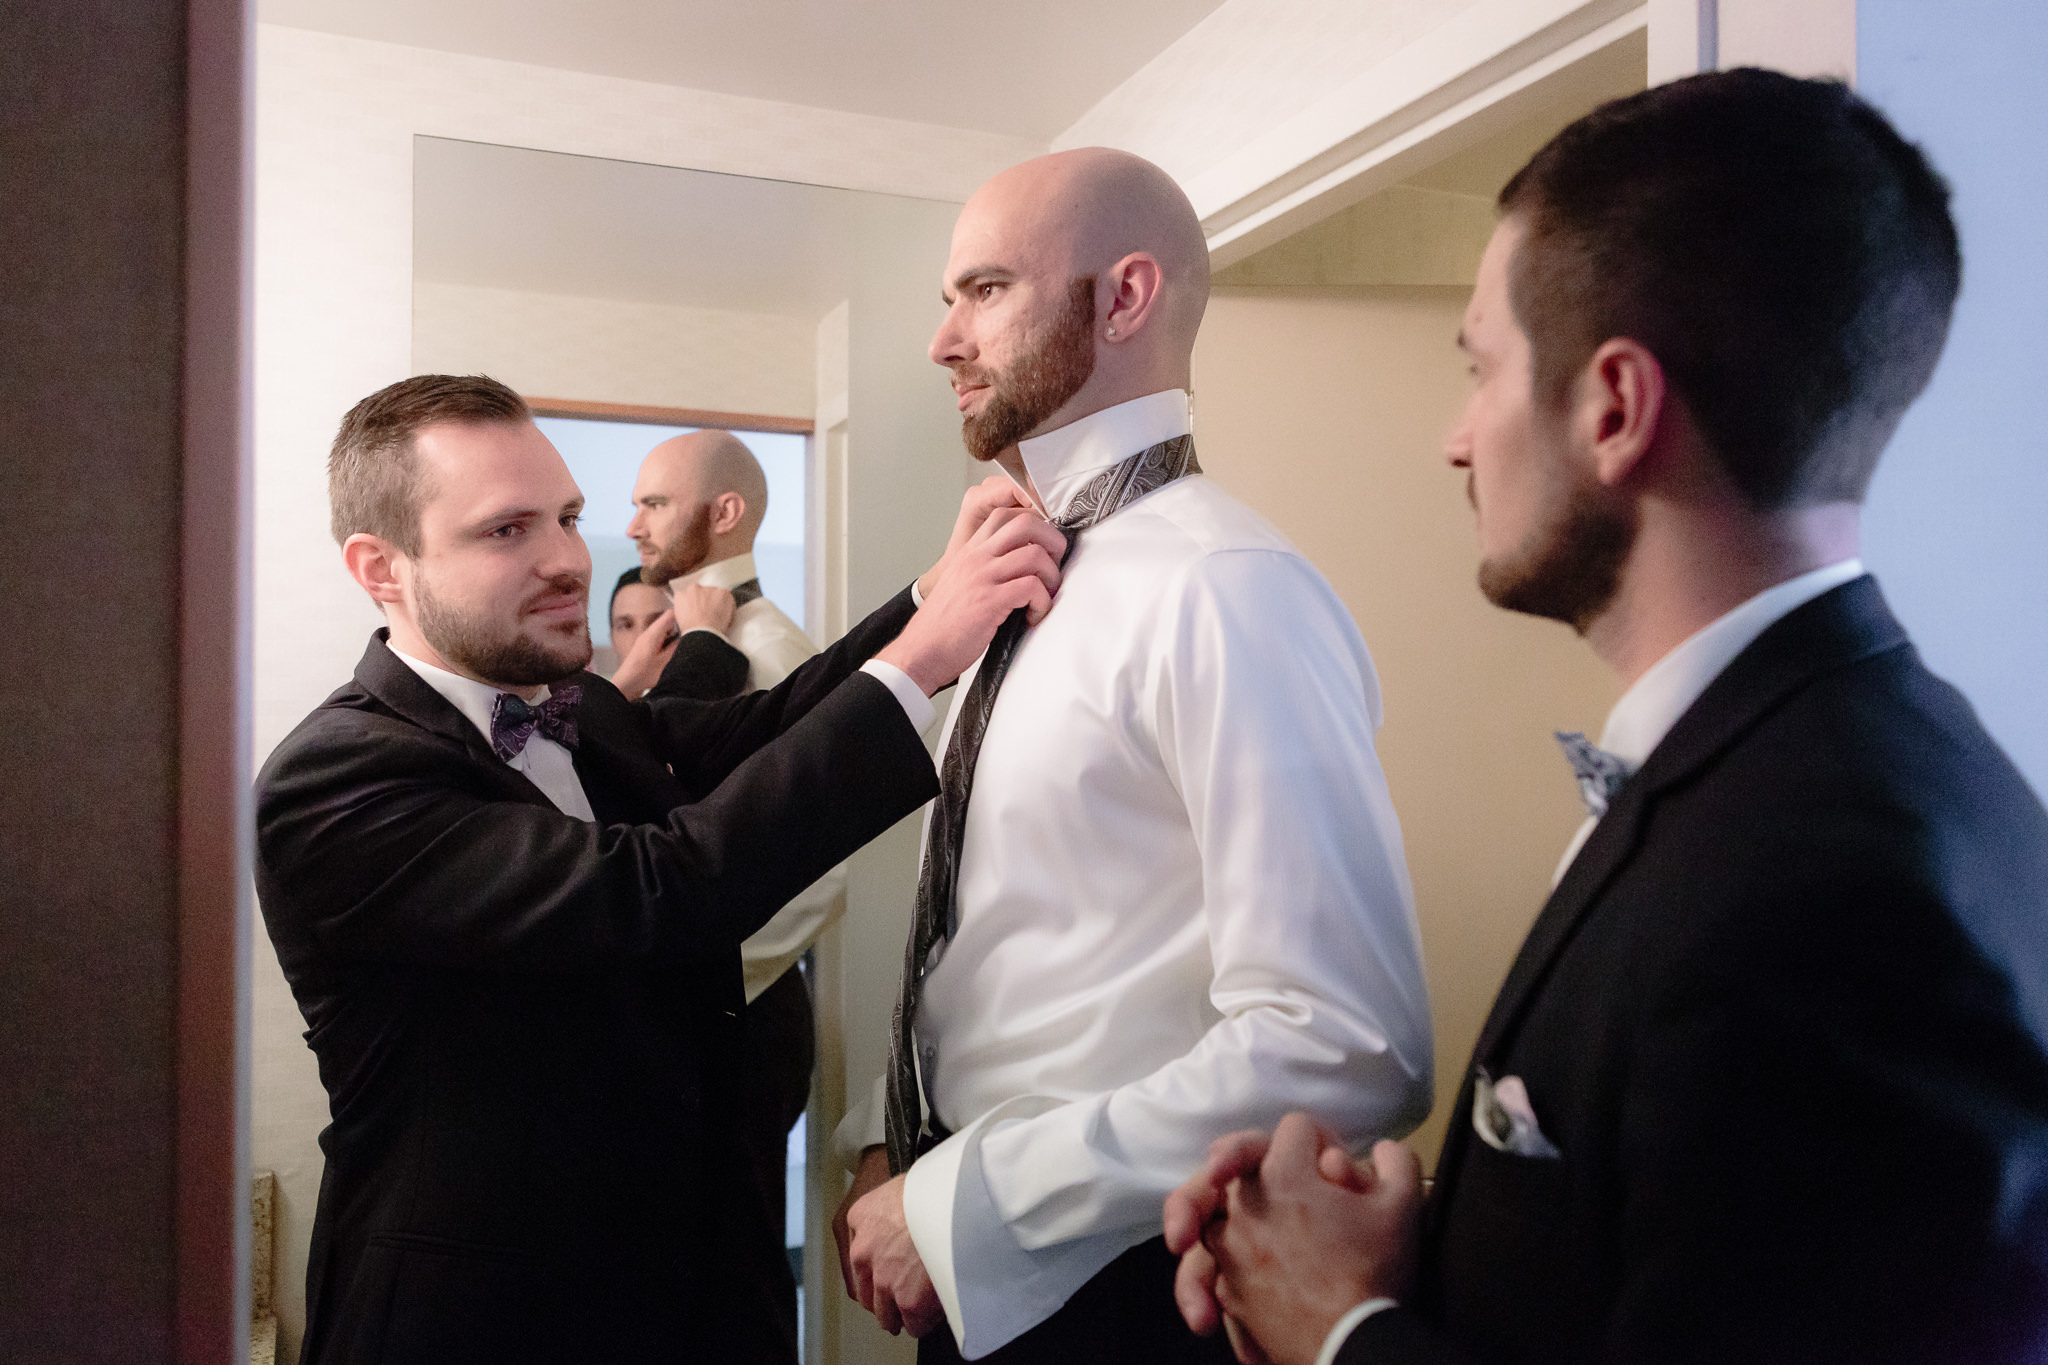 Groomsmen ties groom's tie before his National Aviary wedding